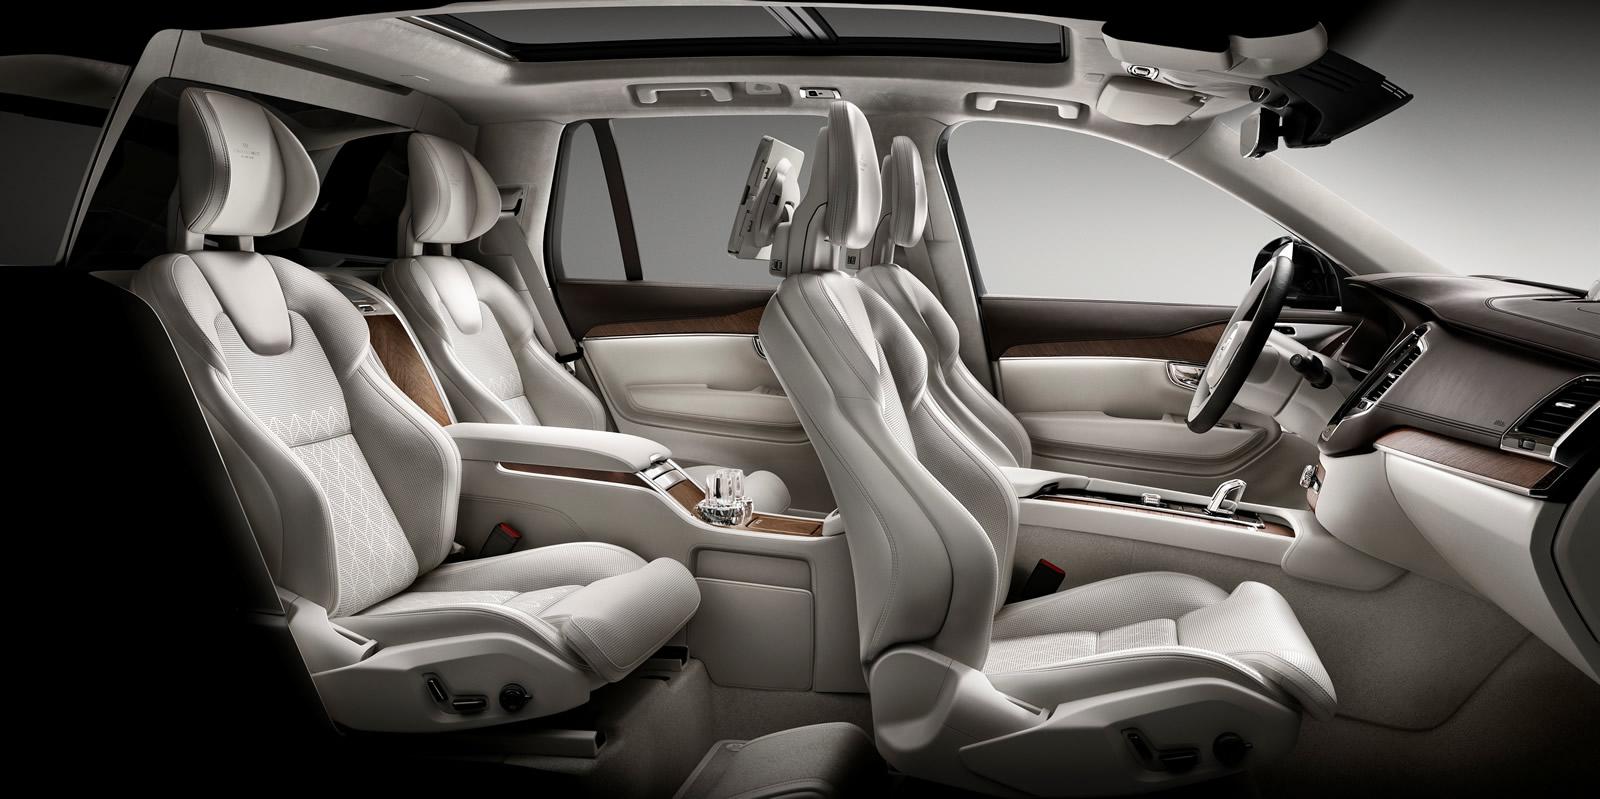 Volvo XC90 interior - Seats